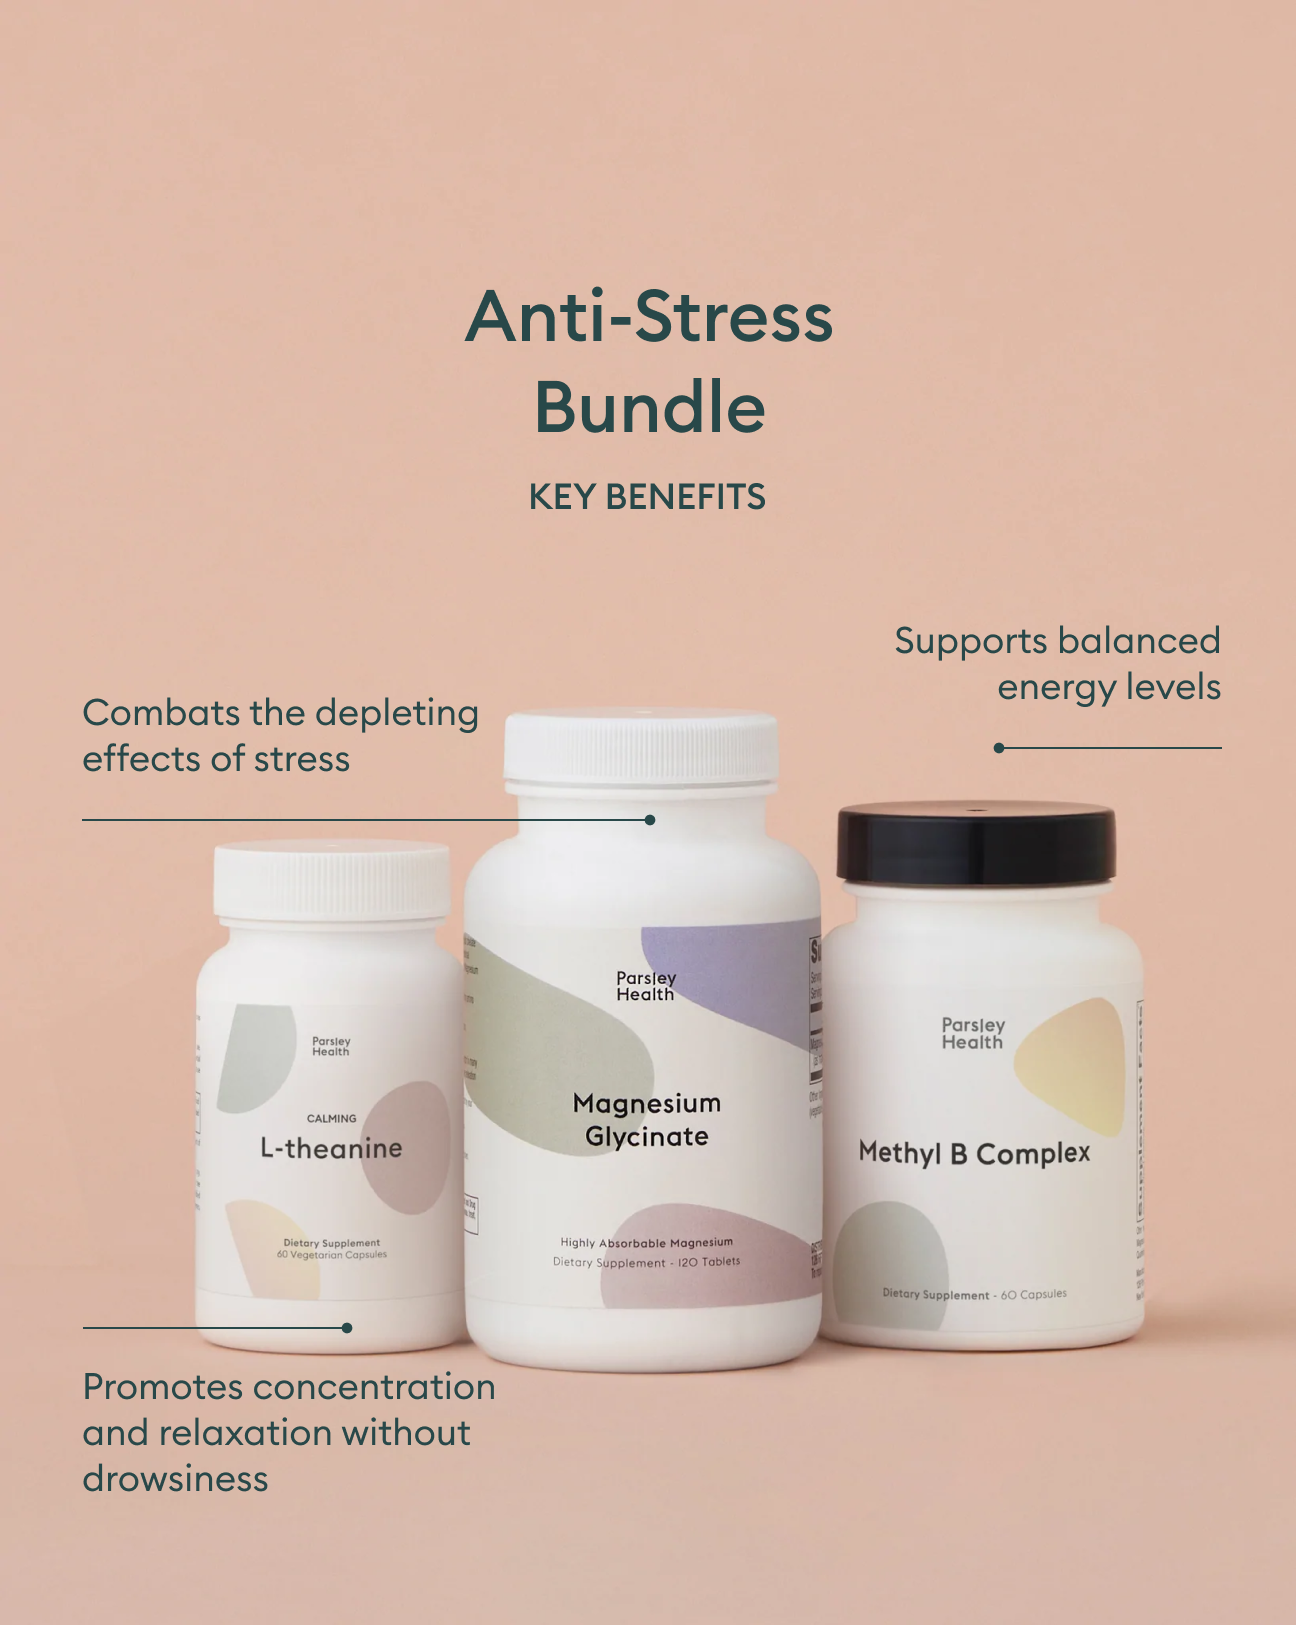 The Anti-Stress Bundle